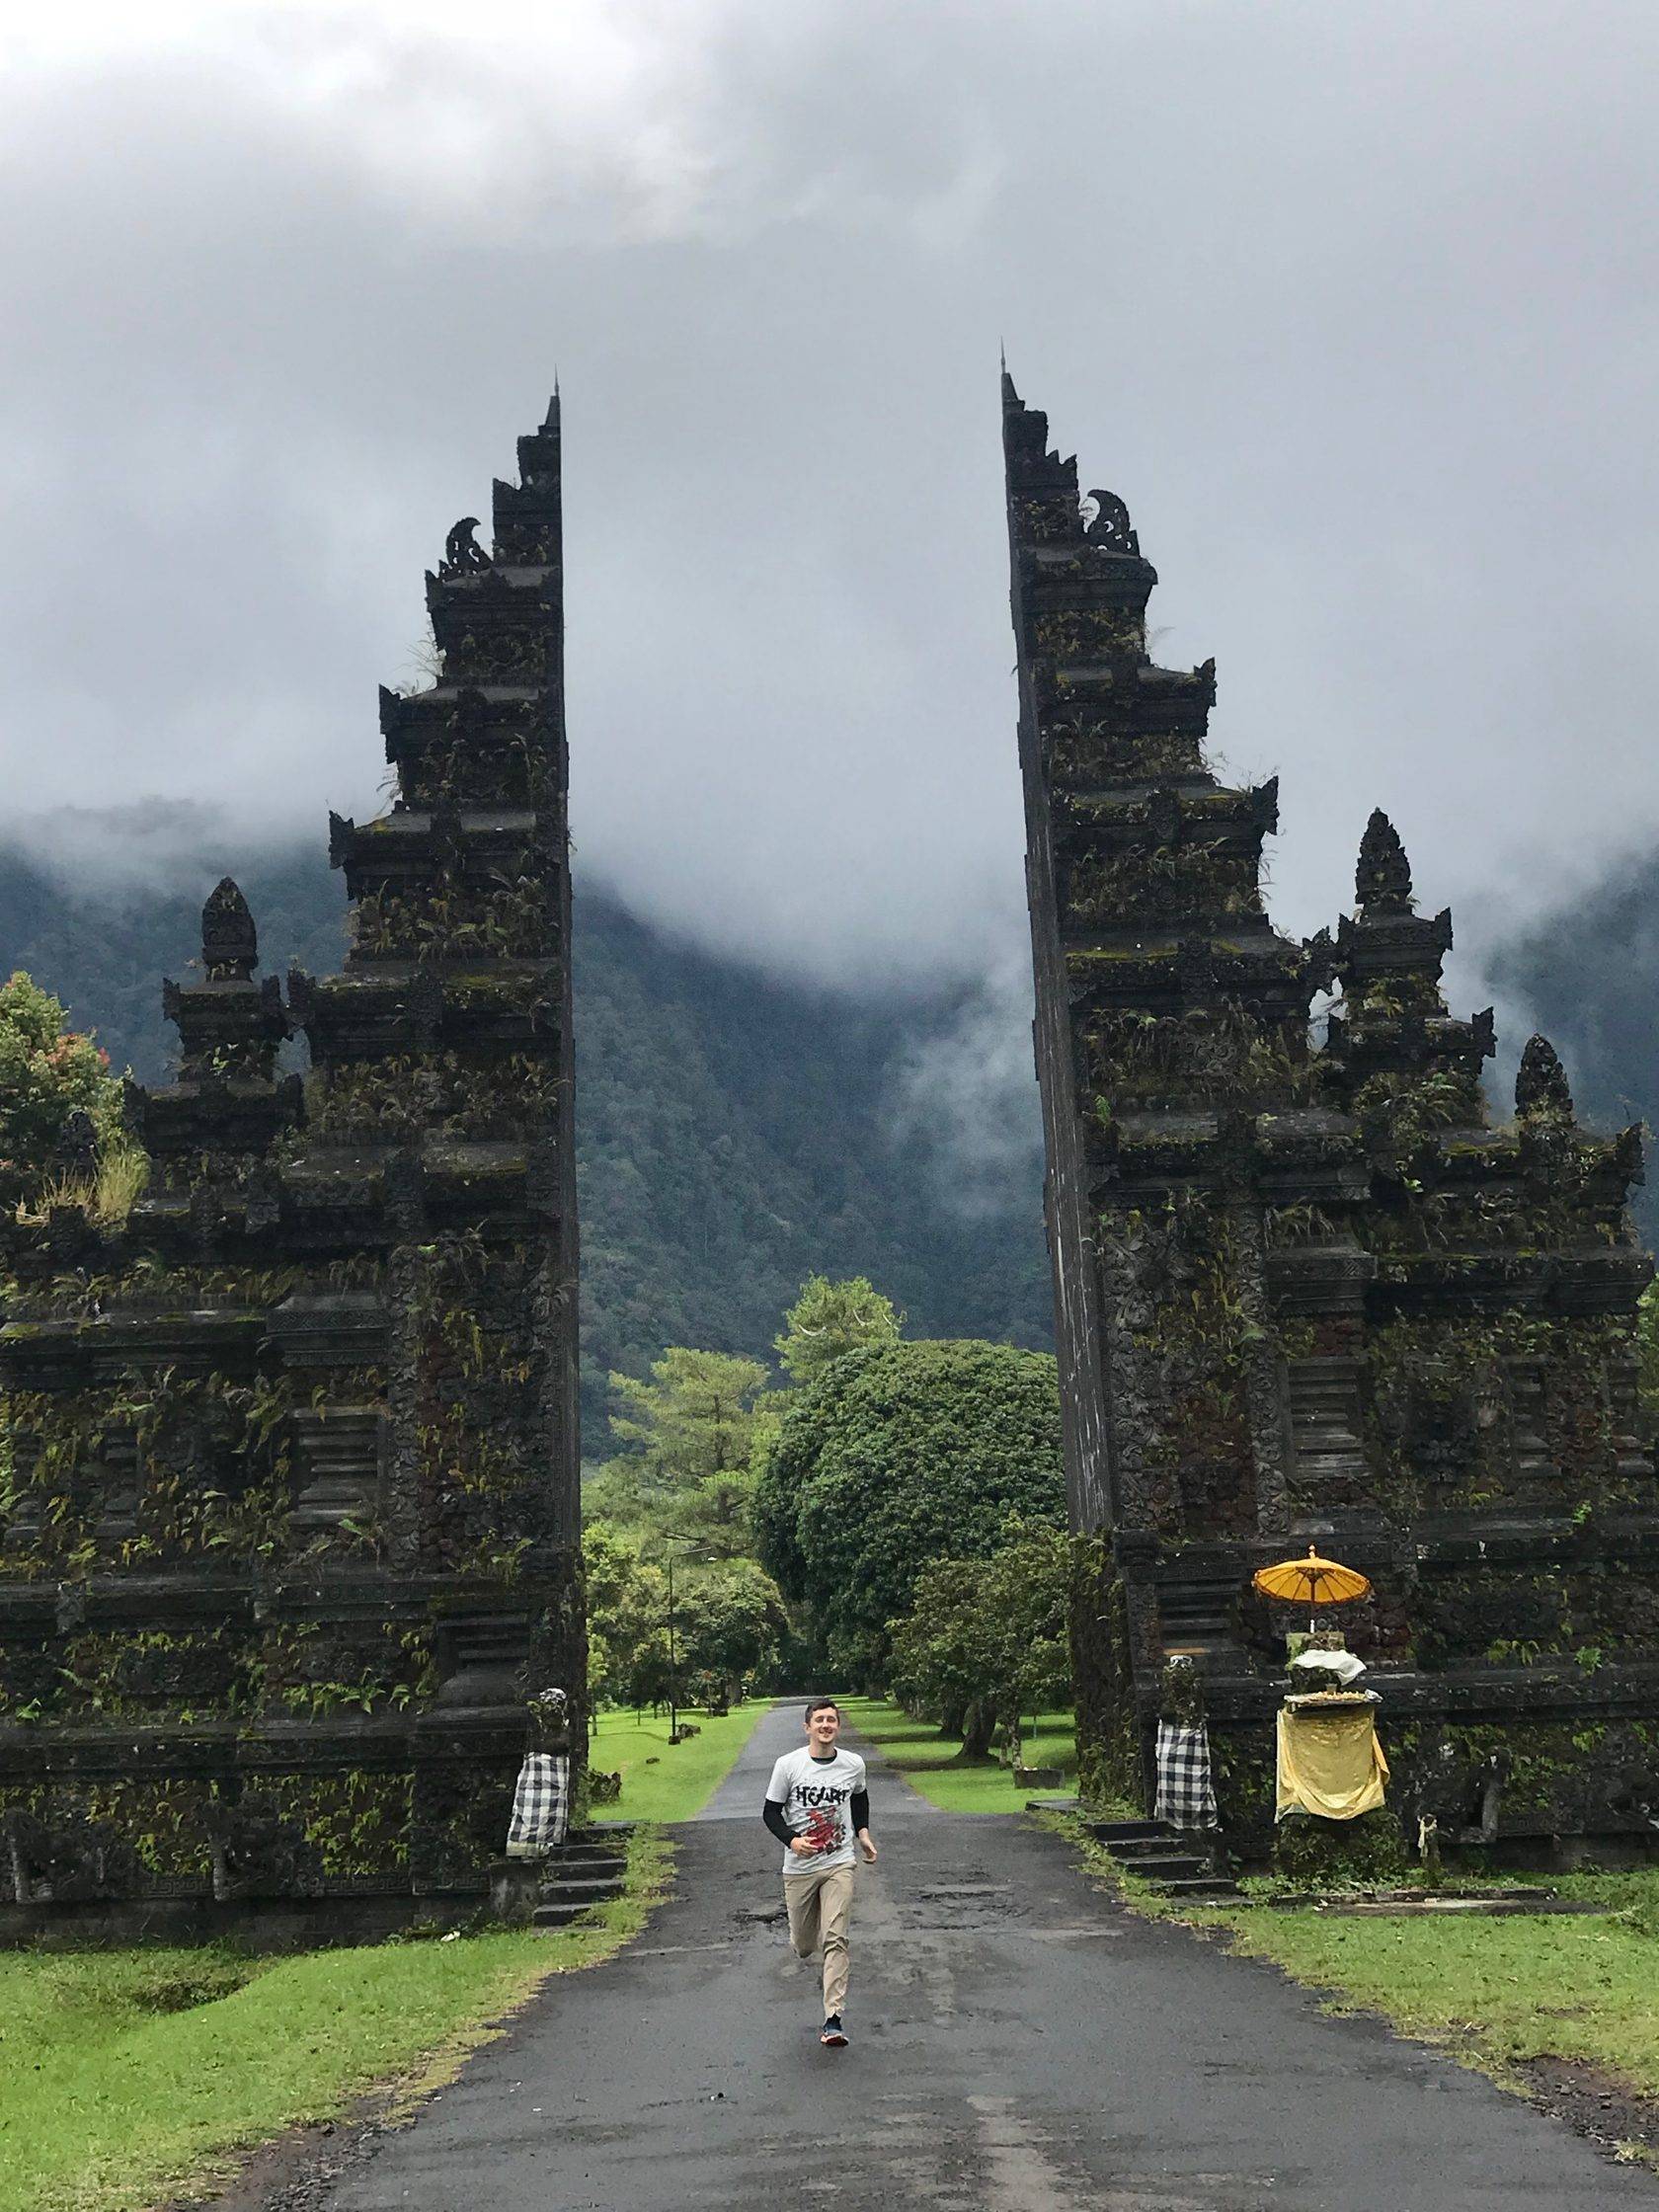 Бали, индонезия — города и районы, экскурсии, достопримечательности бали от «тонкостей туризма»